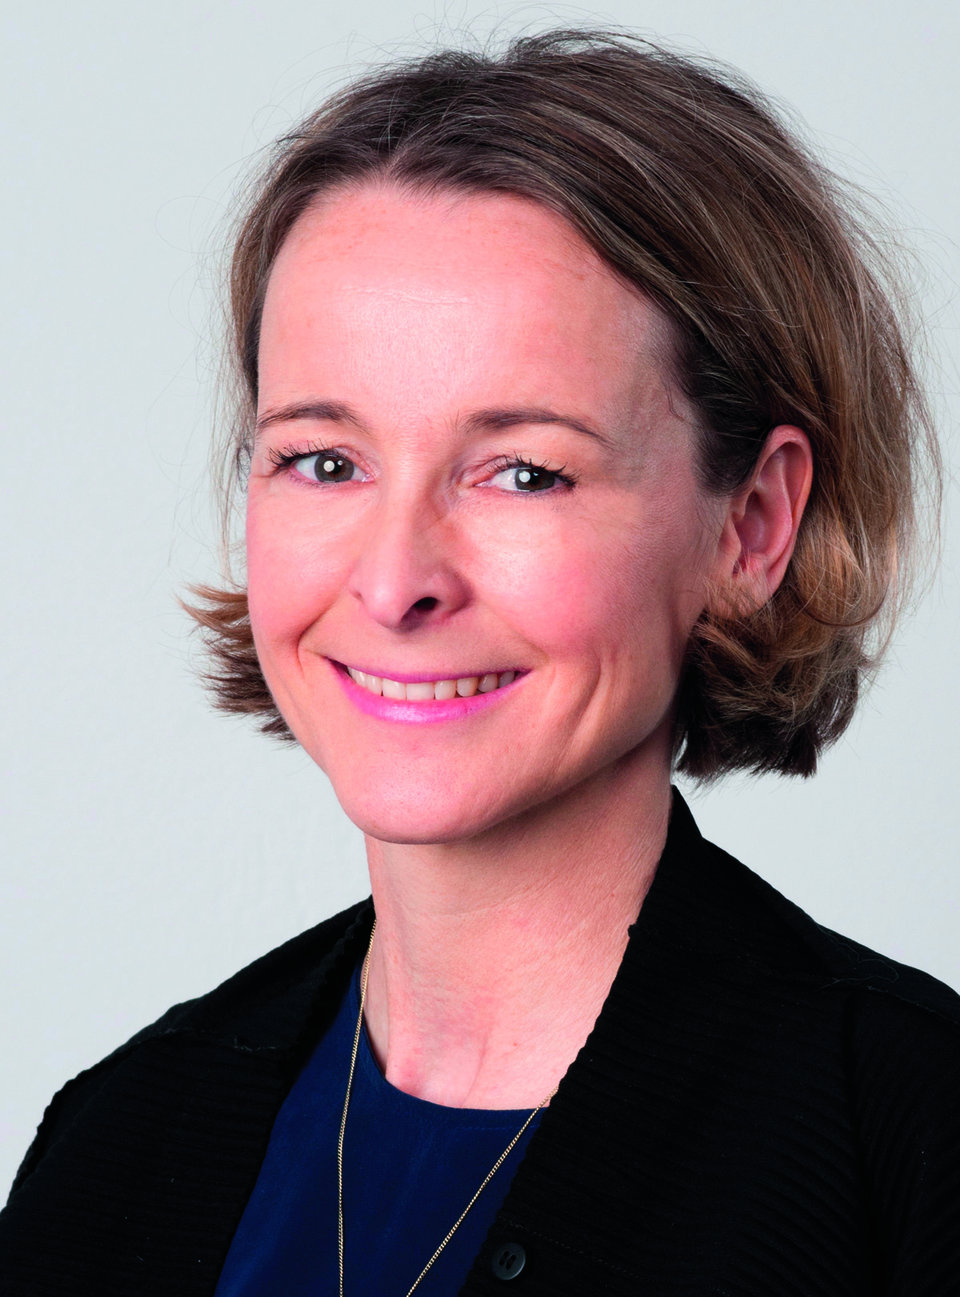 Pd Dr. Simone Wesselmann; Bereichsleiterin Deutsche Krebsgesellschaft